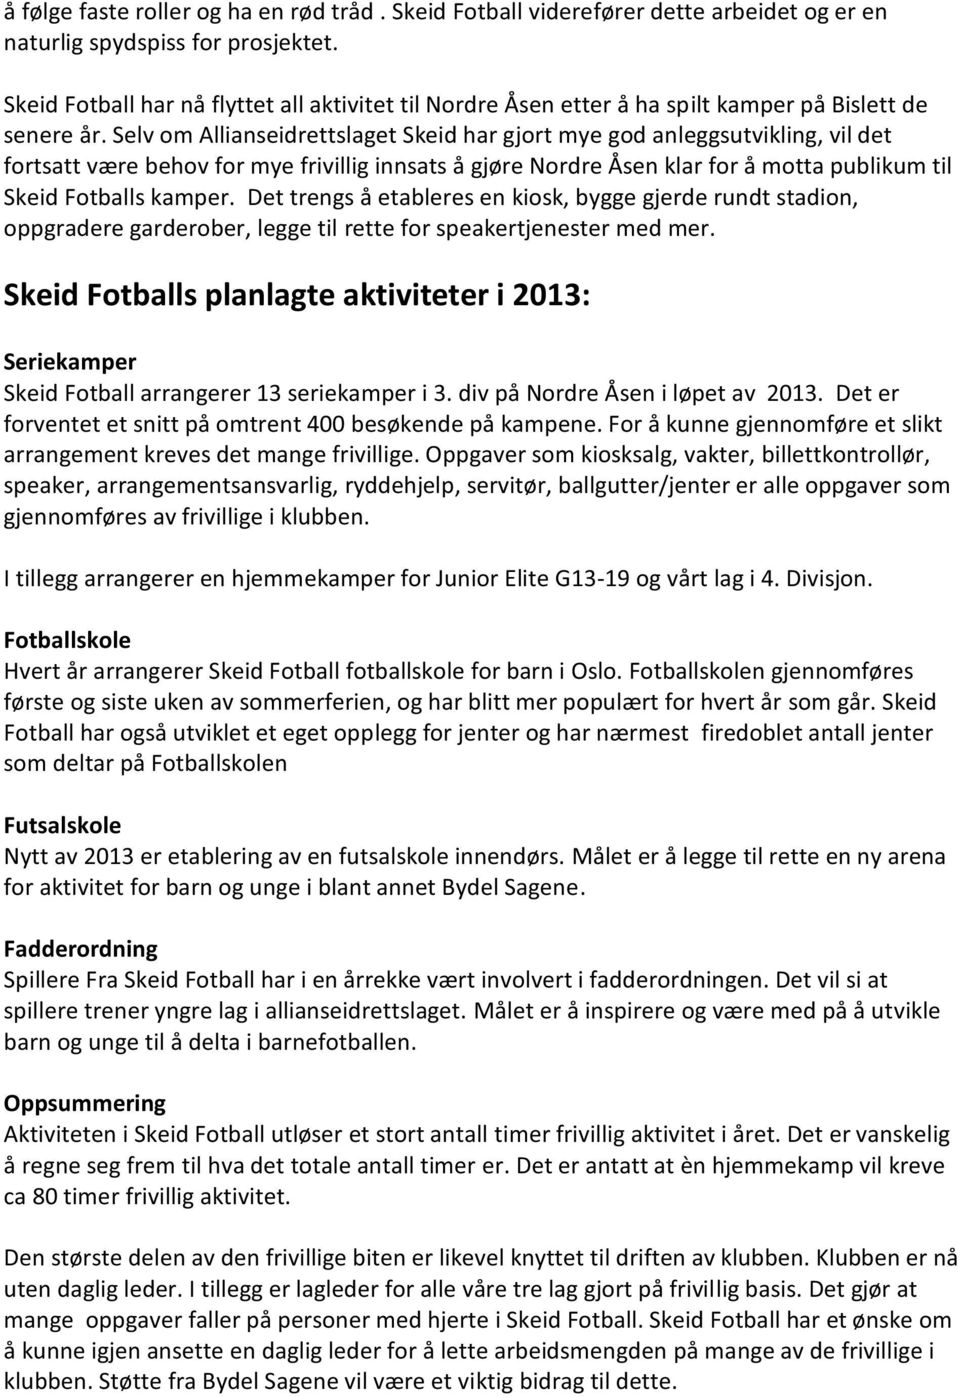 Selv om Allianseidrettslaget Skeid har gjort mye god anleggsutvikling, vil det fortsatt være behov for mye frivillig innsats å gjøre Nordre Åsen klar for å motta publikum til Skeid Fotballs kamper.